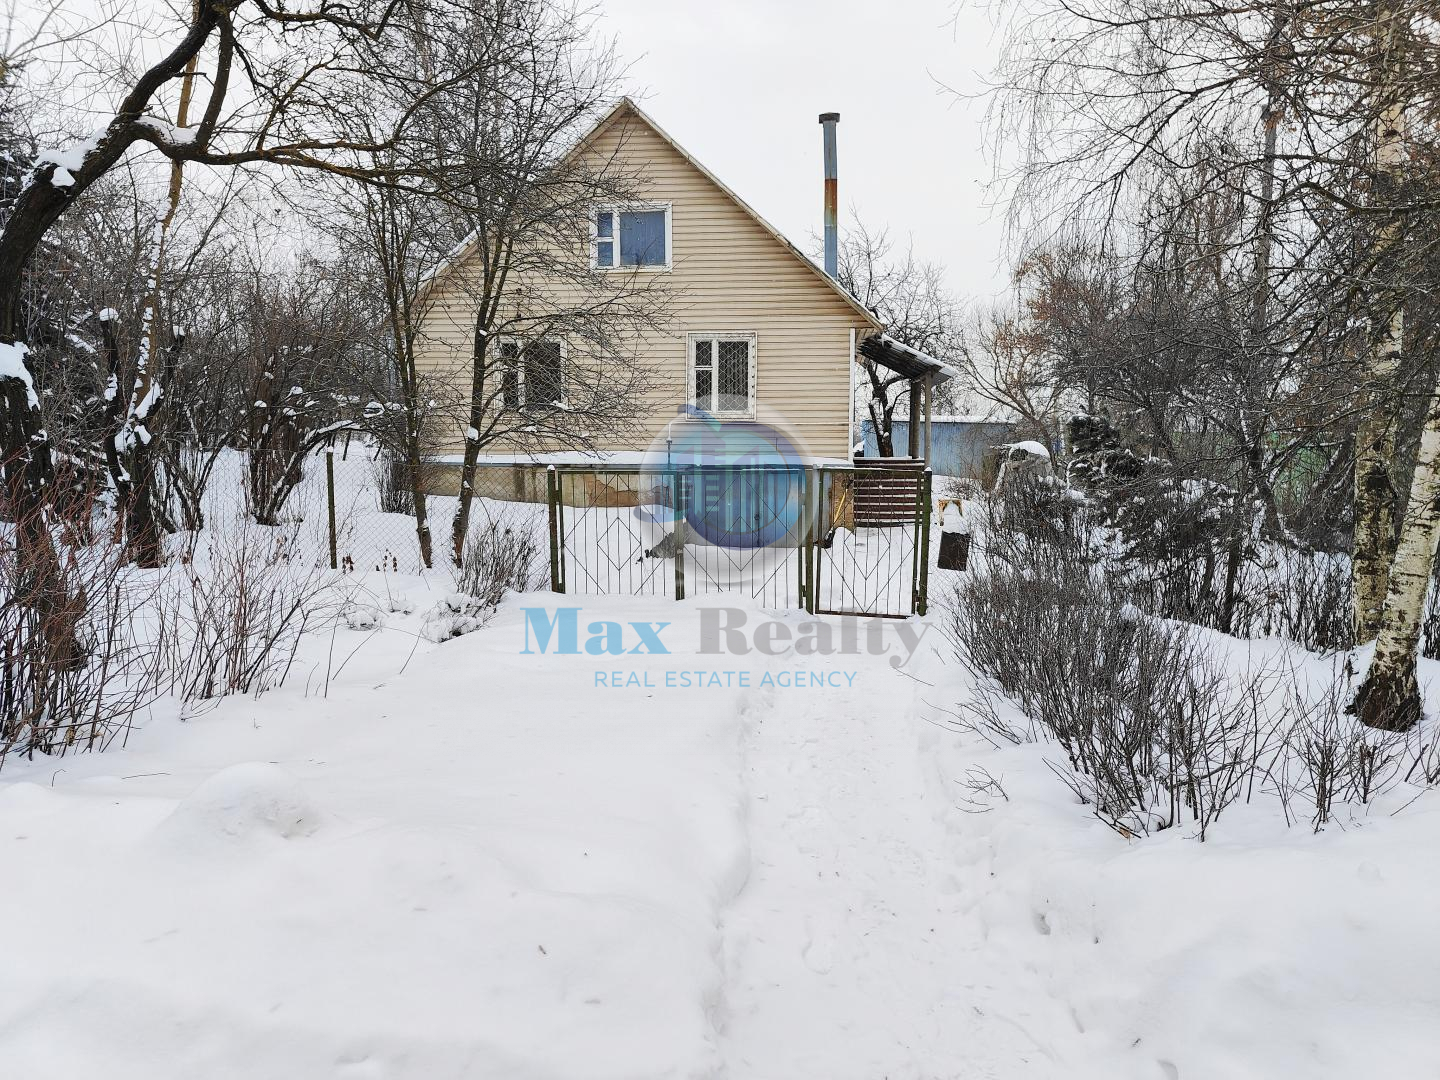 Продам дом в Калиновка по адресу 14, площадь 80 квм Недвижимость Московская  область (Россия)   Оперативный показ, быстрый выход на сделку